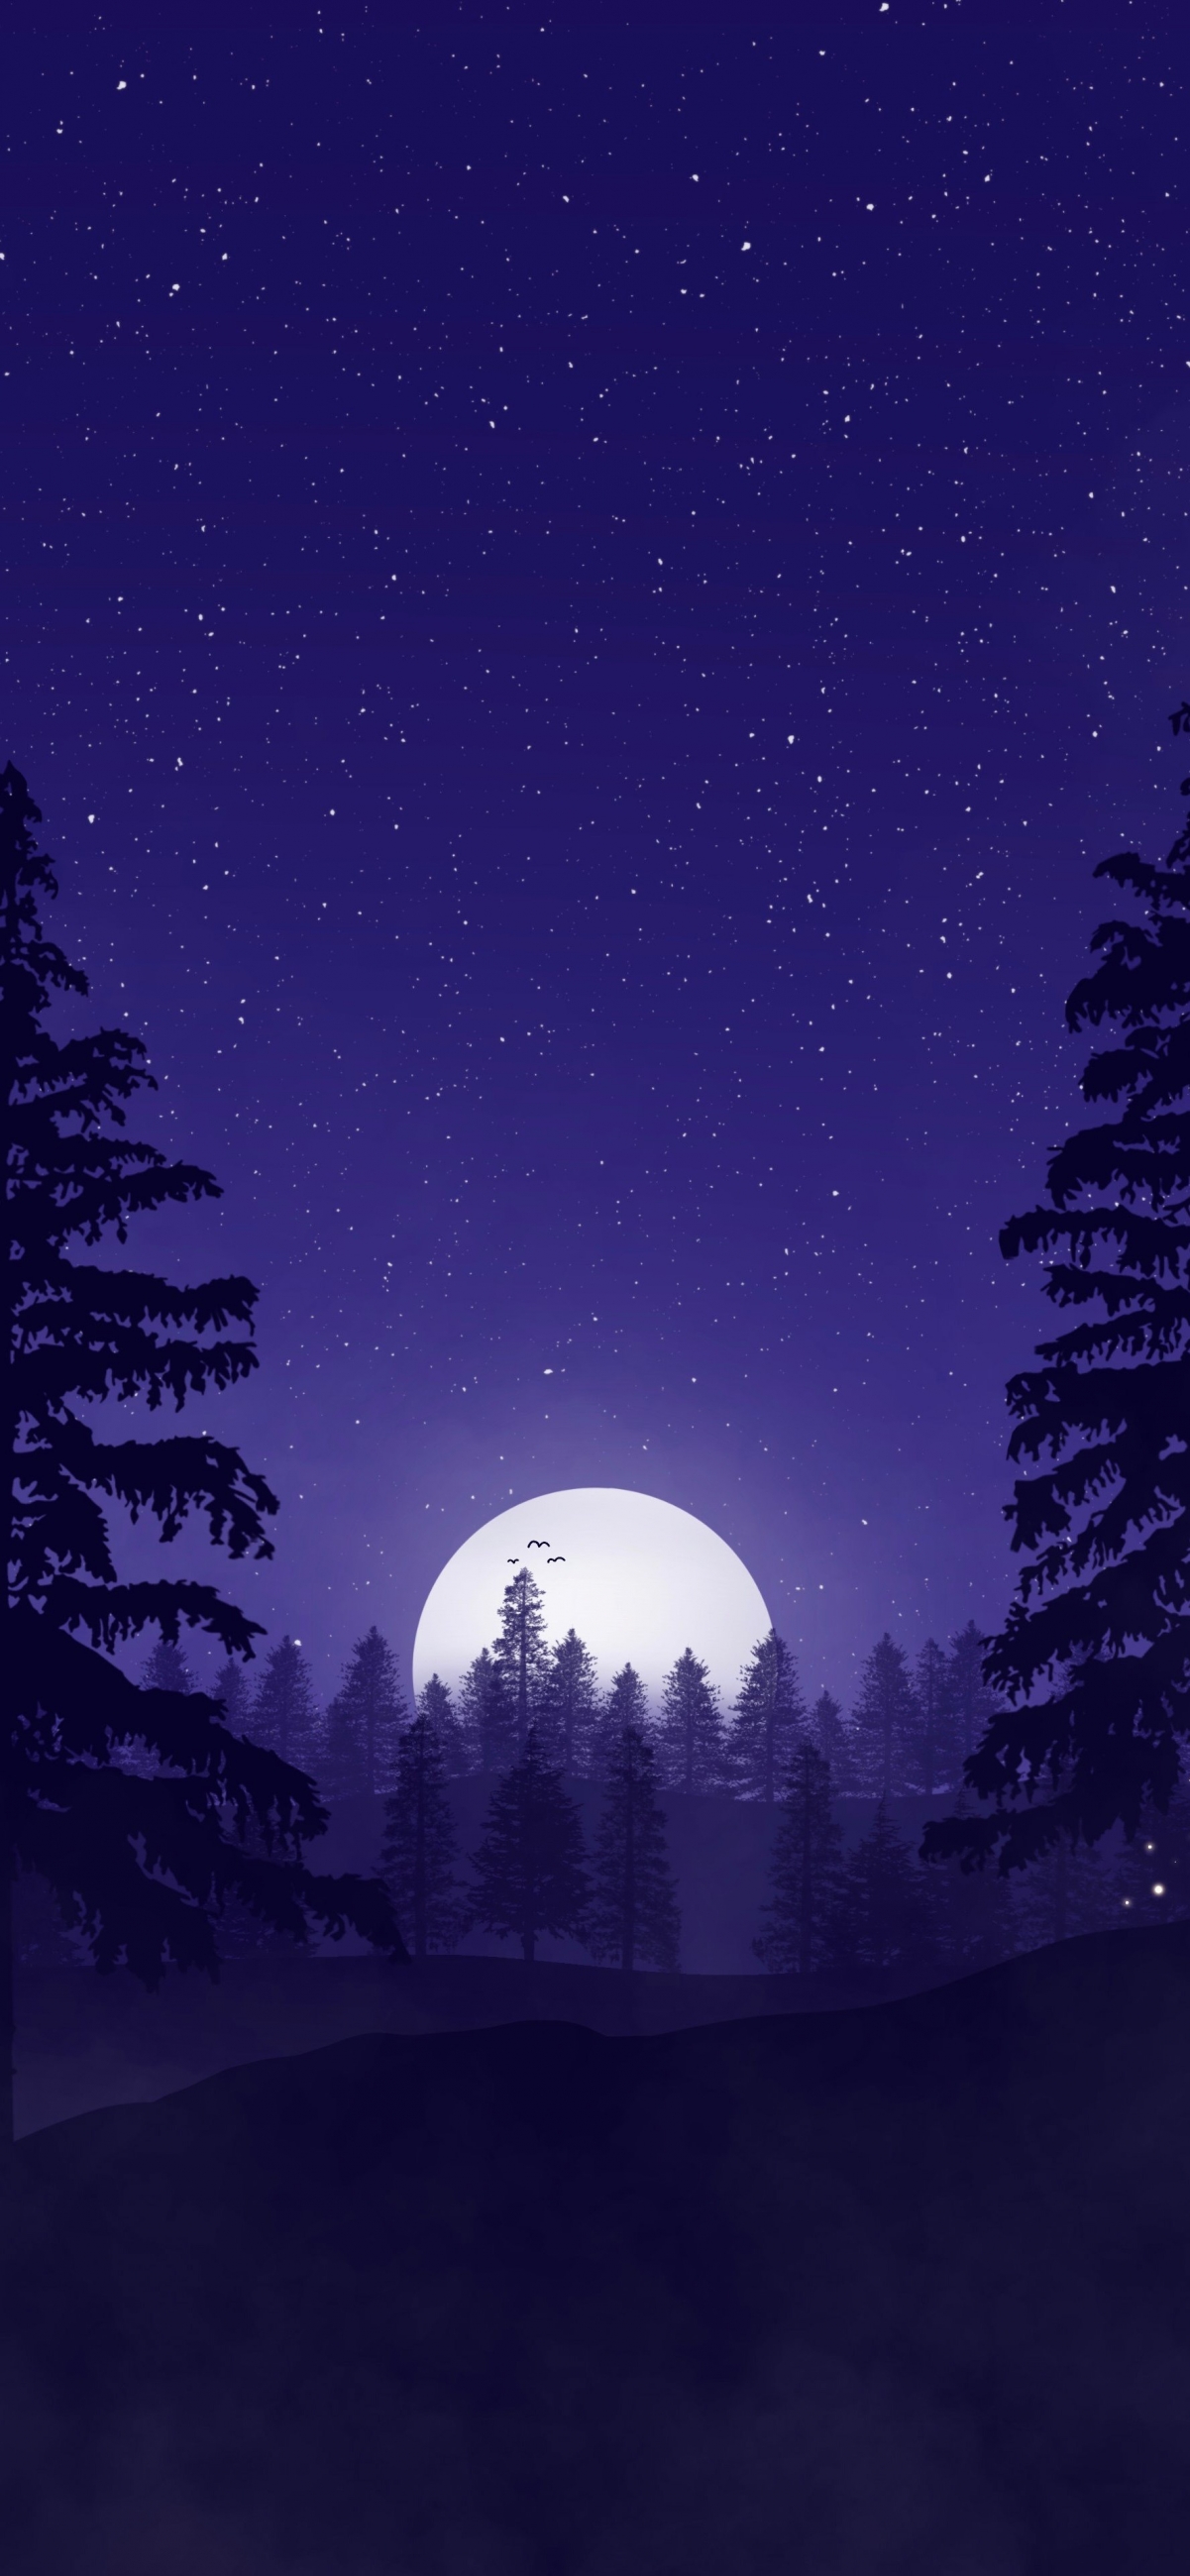 简约 山 森林 星空 月亮 4k背景图手机壁纸 手机壁纸-第1张